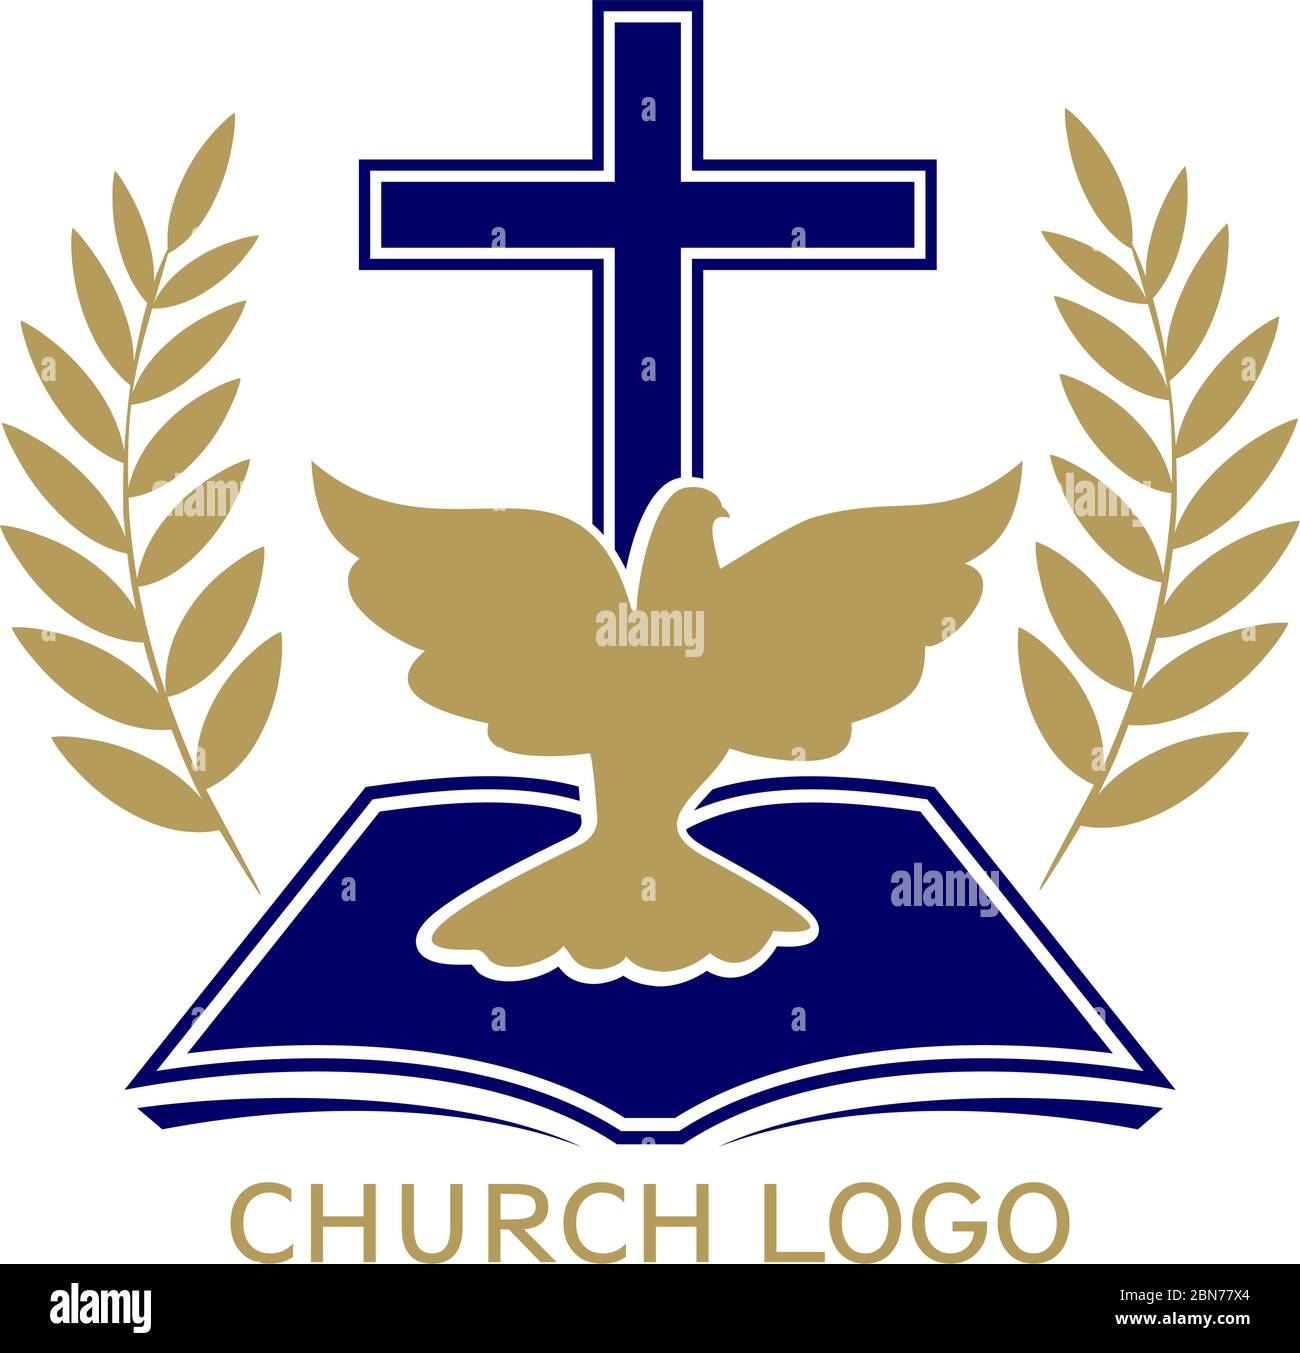 Logo de l'Église, symbole du christianisme, croix , colombe et évangile, écriture, illustration vectorielle. Illustration de Vecteur